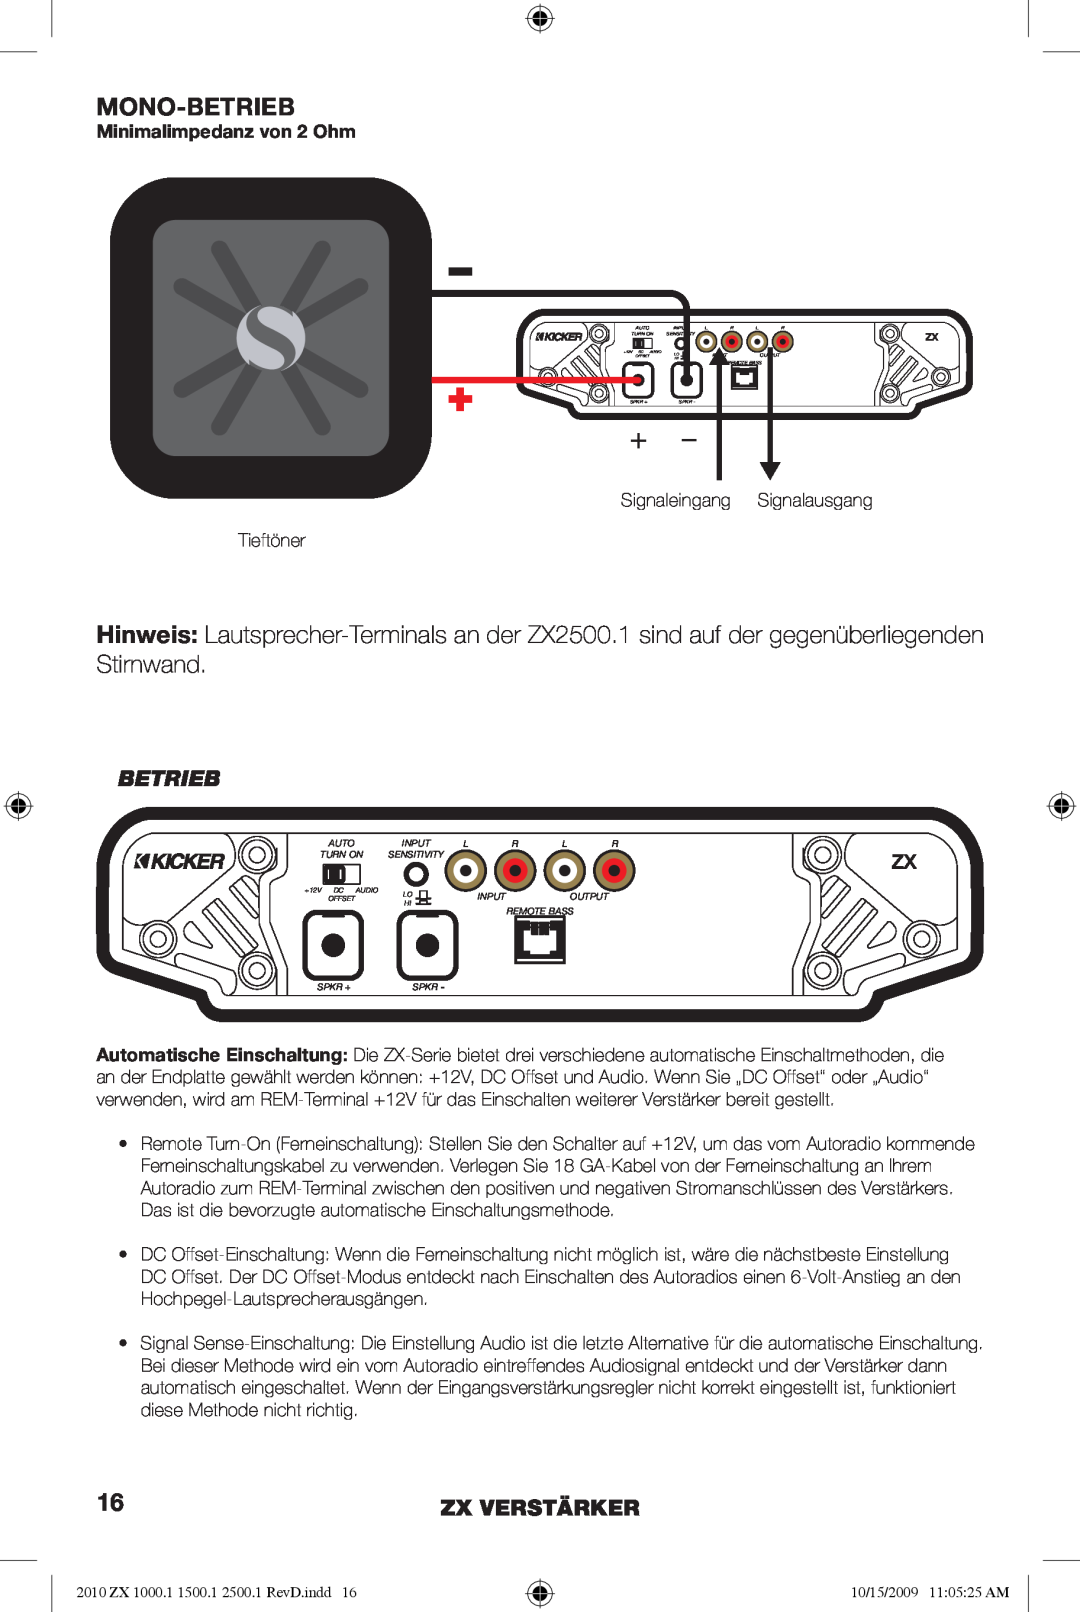 Kicker ZX1500.1, ZX2500.1, ZX1000.1 manual Mono-Betrieb, Zx Verstärker, Minimalimpedanz von 2 Ohm 